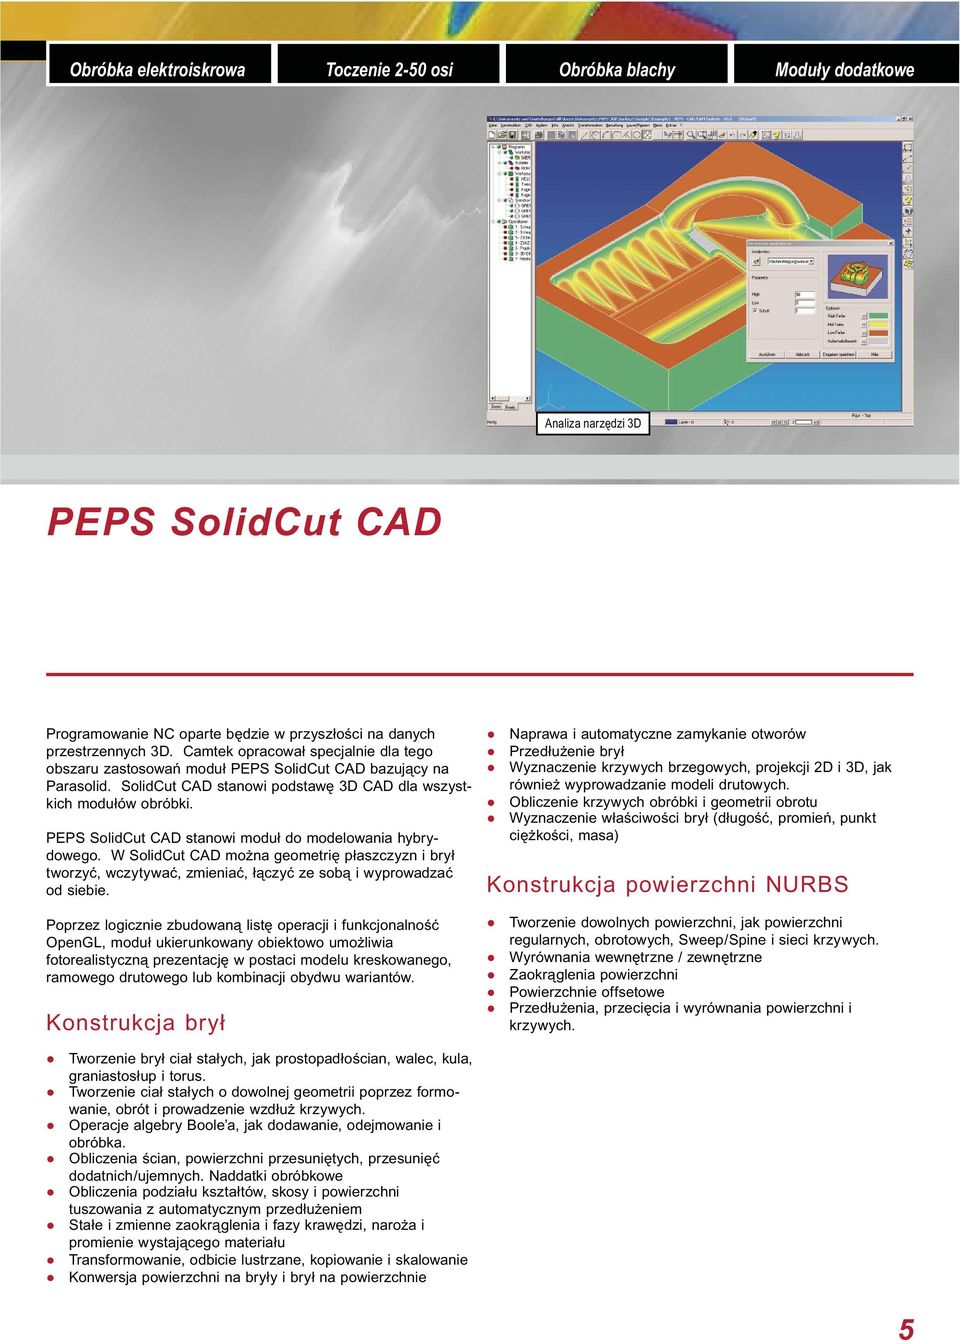 SolidCut CAD stanowi podstawę 3D CAD dla wszystkich modułów obróbki. PEPS SolidCut CAD stanowi moduł do modelowania hybrydowego.